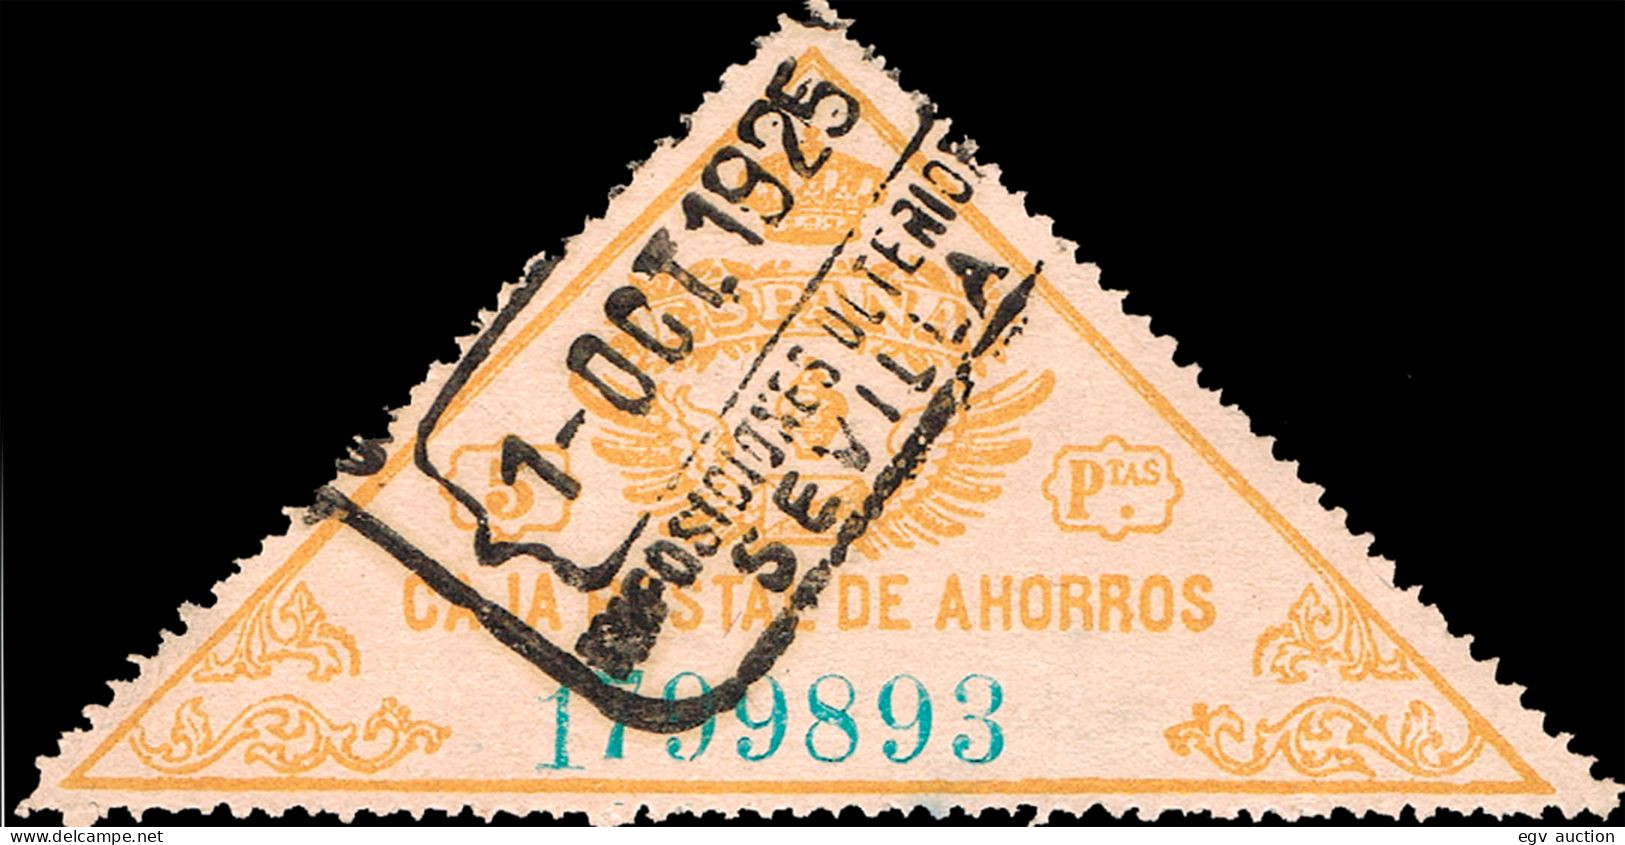 Sevilla - Caja Postal Ahorros - Gávez O 5 - Mat "Caja Postal De Ahorros - Sevilla Imposiciones Ulteriores" - Fiscali-postali